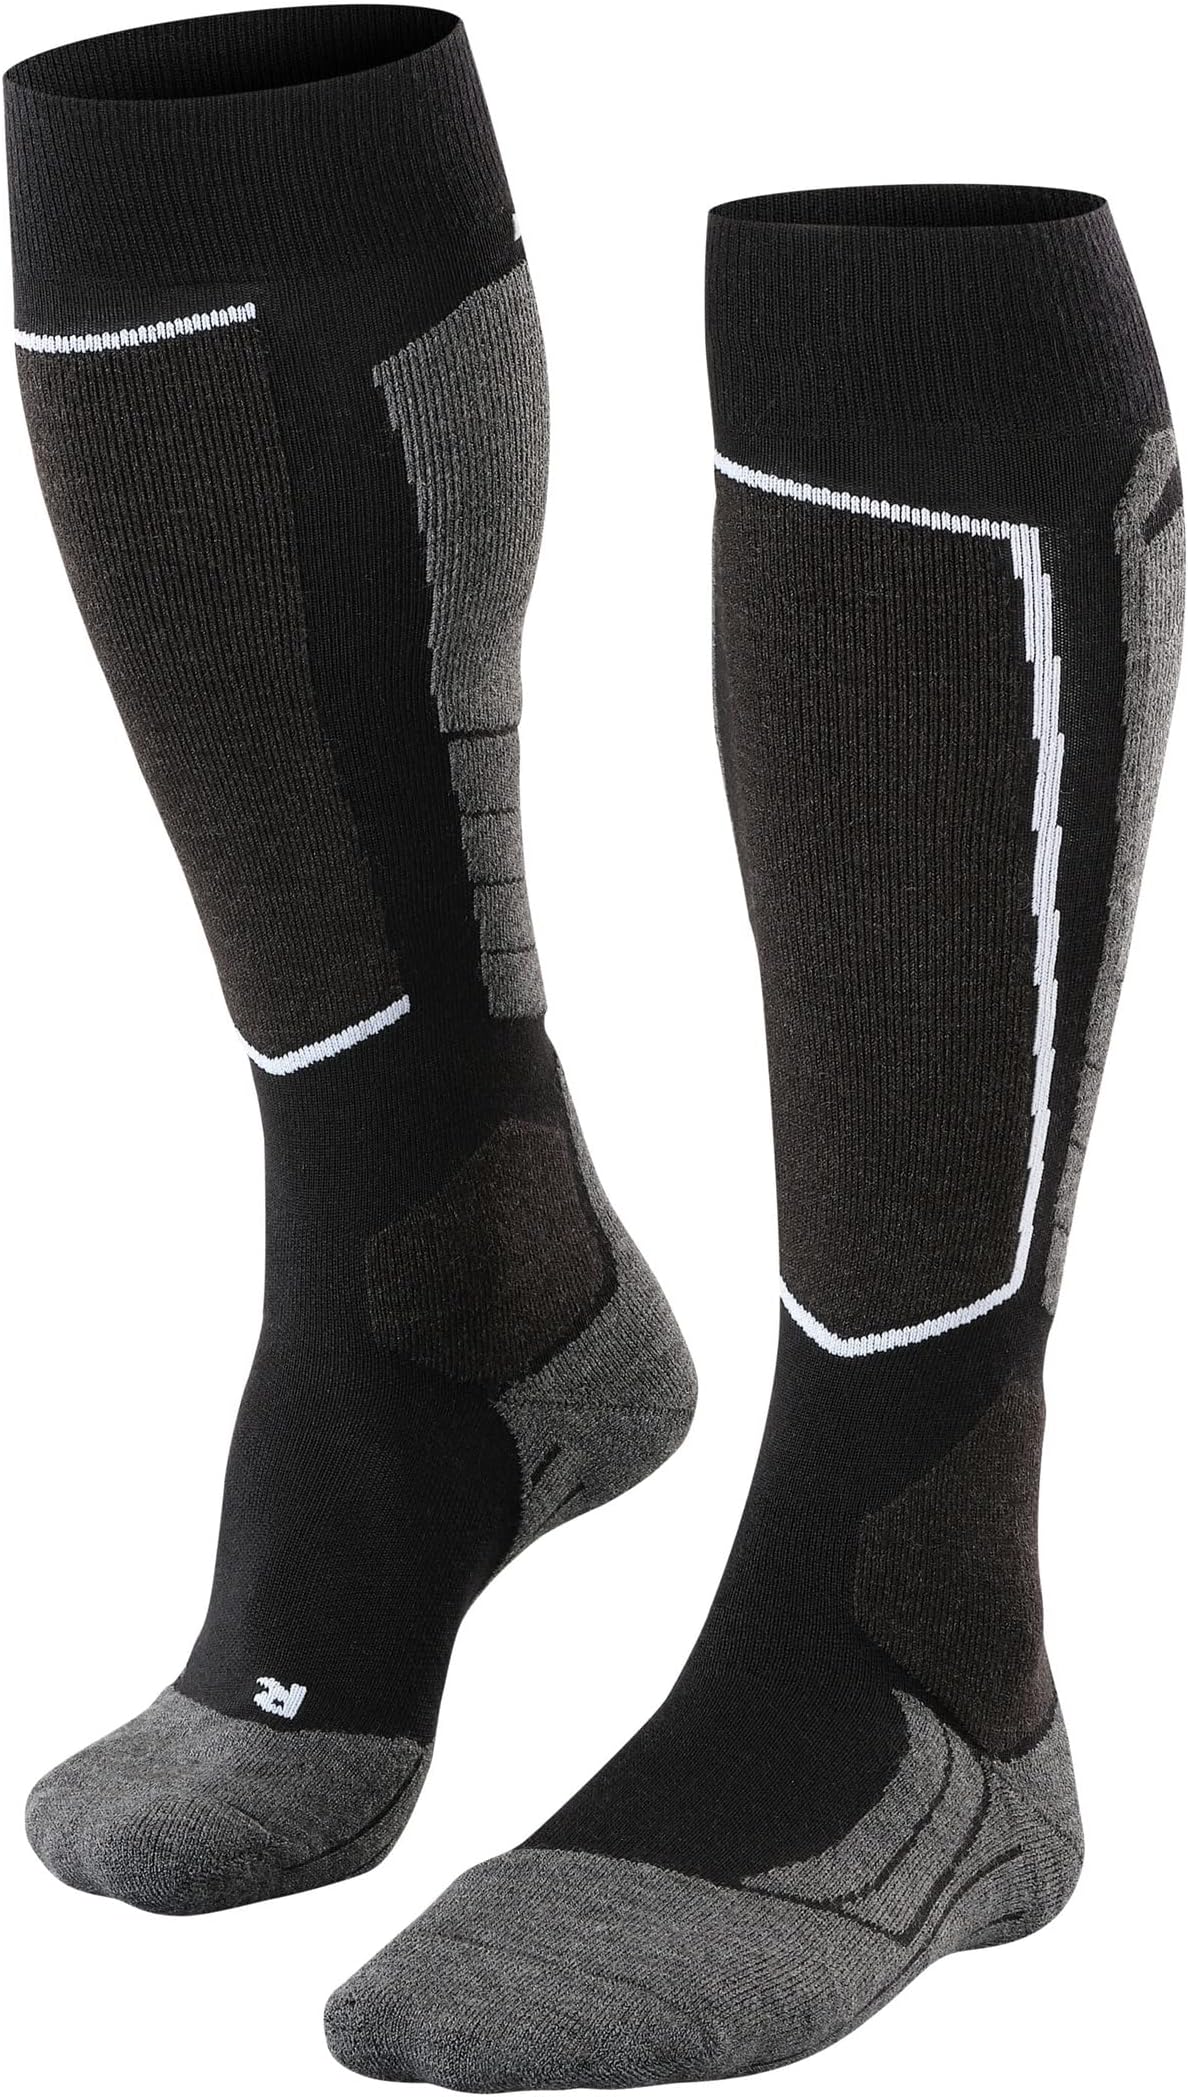 SK2 Шерстяные лыжные носки до колена среднего размера, 1 пара Falke, цвет Black Mix